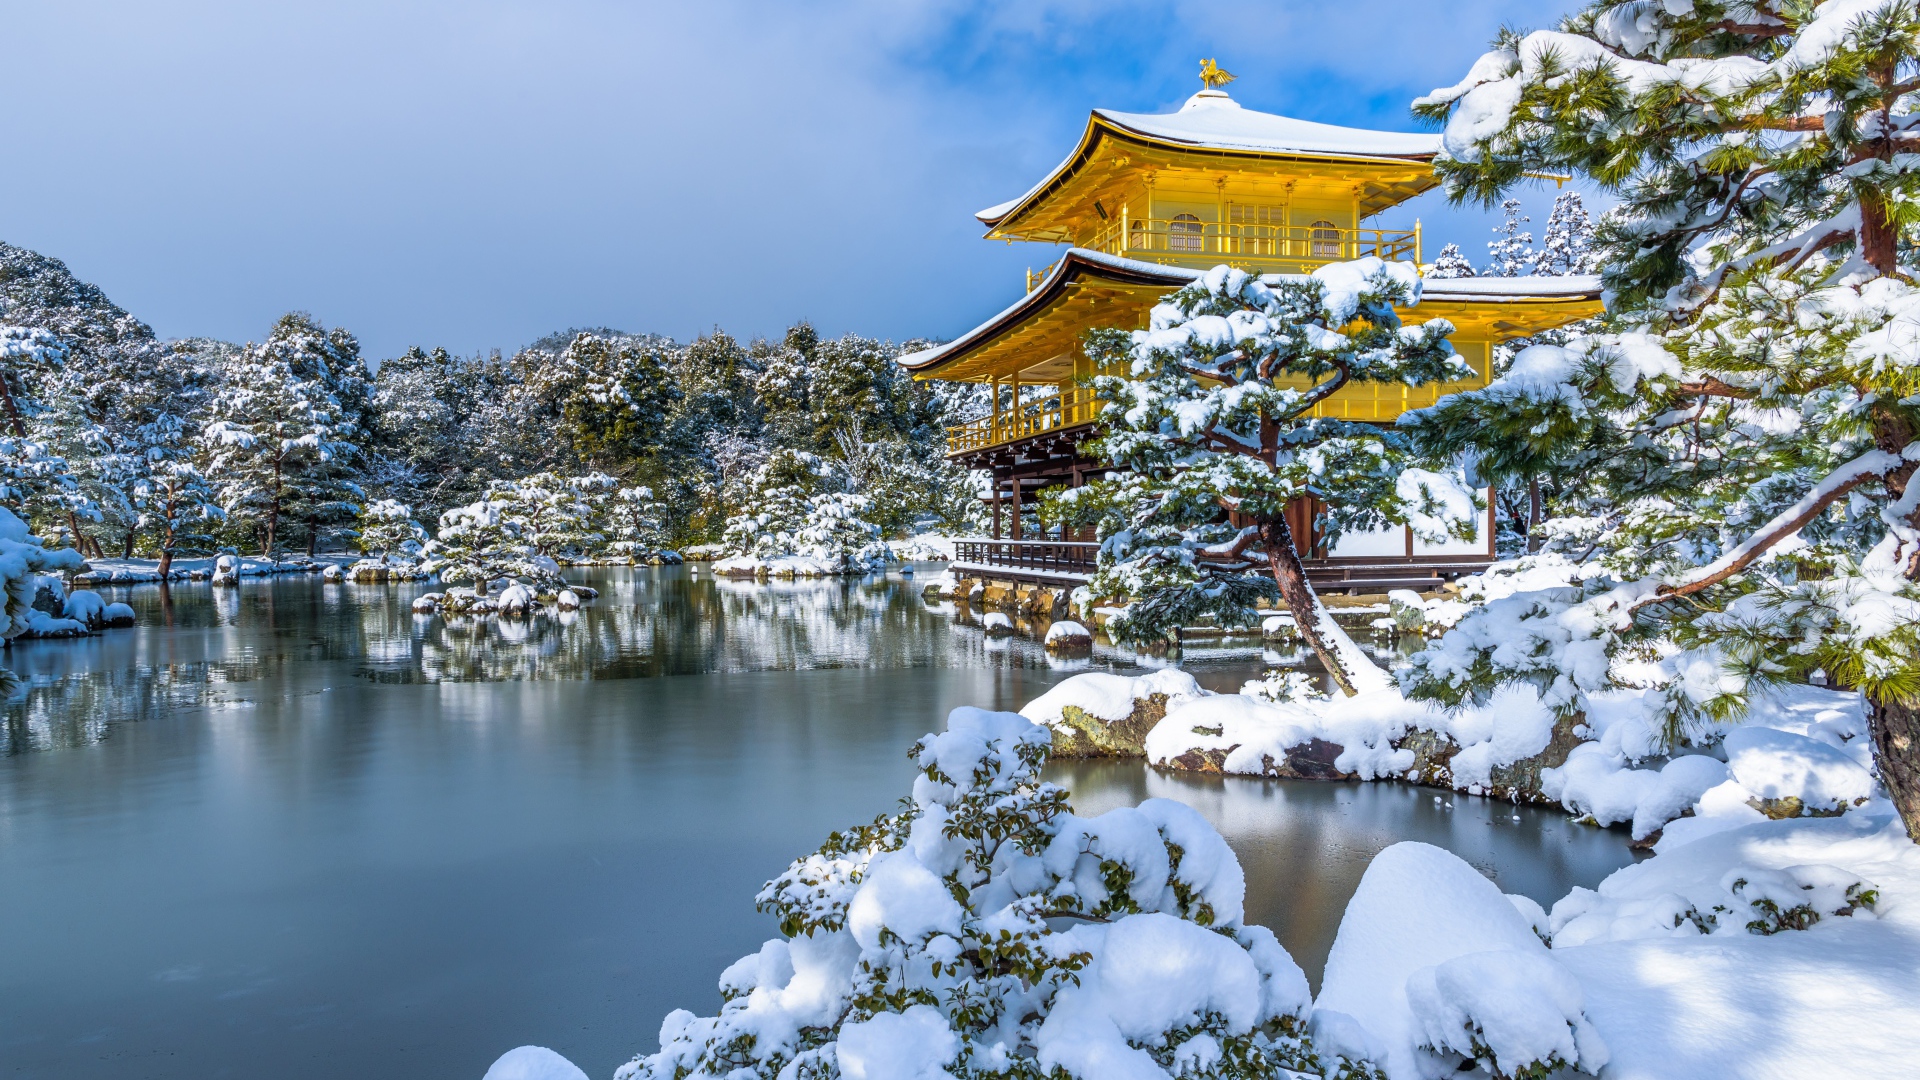 Покрытые снегом деревья и заледеневший пруд у храма Кинкаку-дзи зимой, Япония